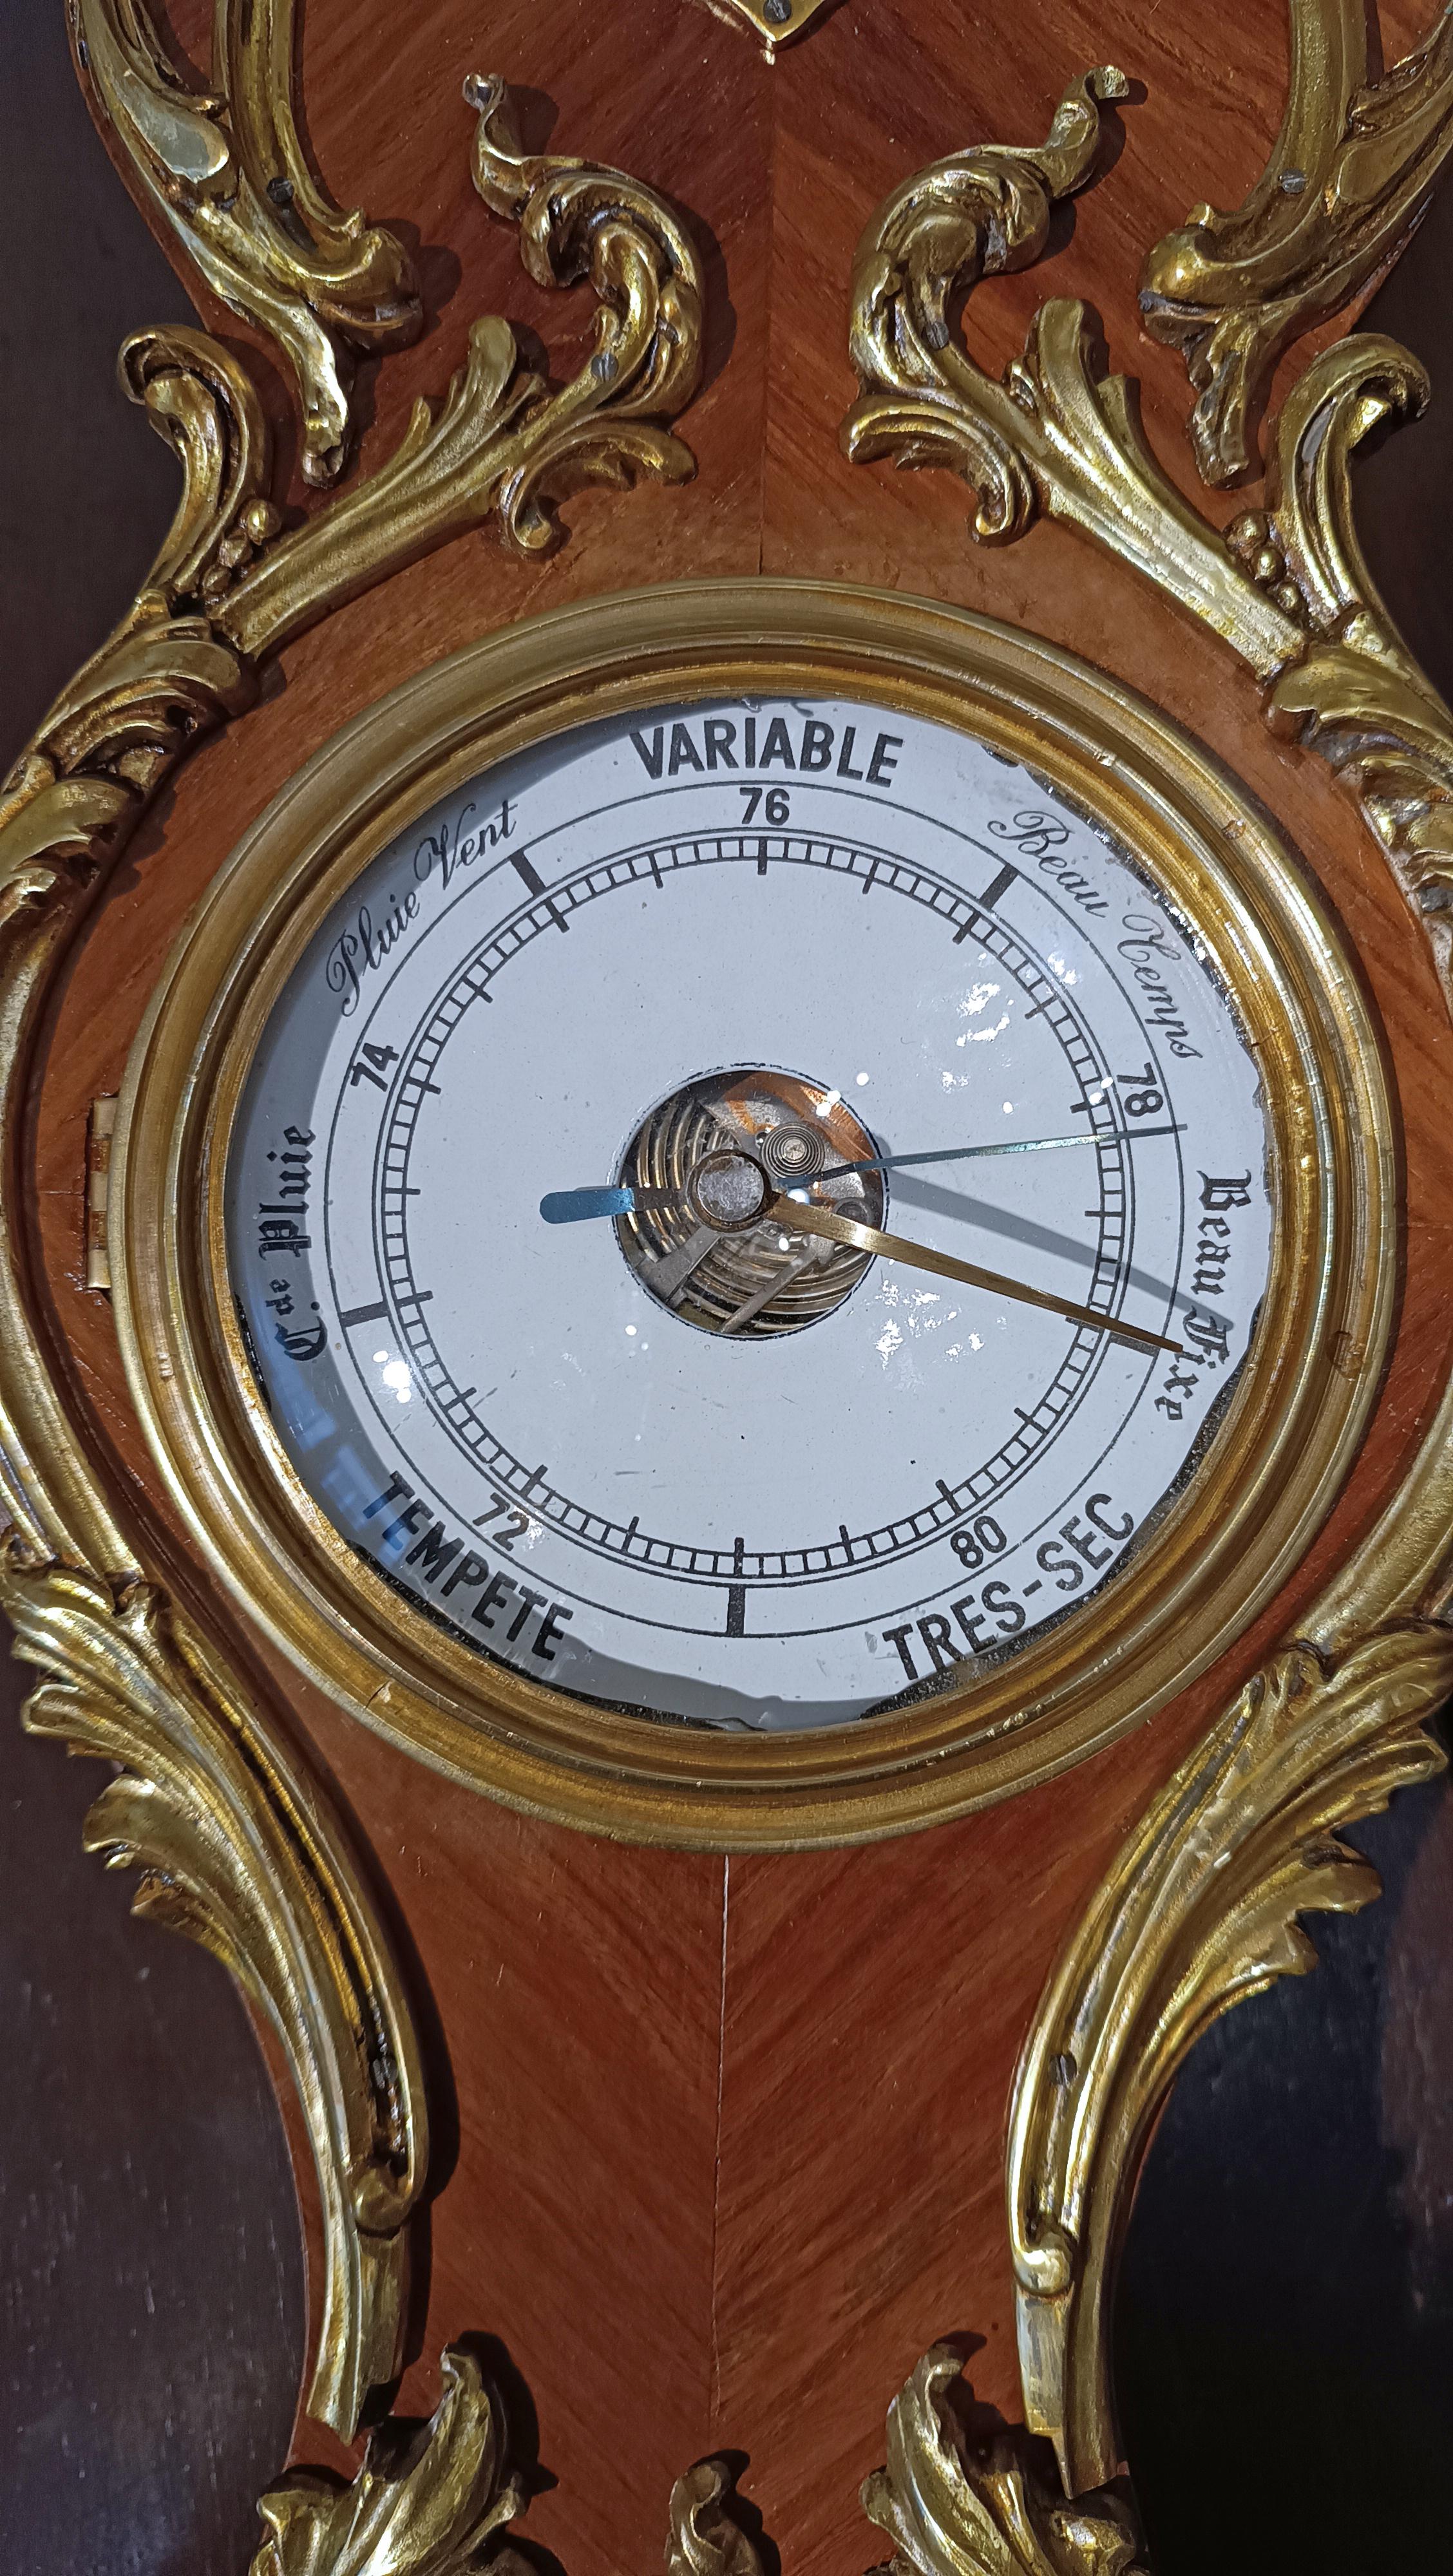 Dieses schöne Wandbarometer mit Raumthermometer ist ein sehr wertvolles Kunsthandwerk, das aus französischer Produktion stammt und auf die Zeit Napoleons III. zurückgeht (etwa zweite Hälfte des 19. Jahrhunderts). Er ist aus Holz gefertigt und mit